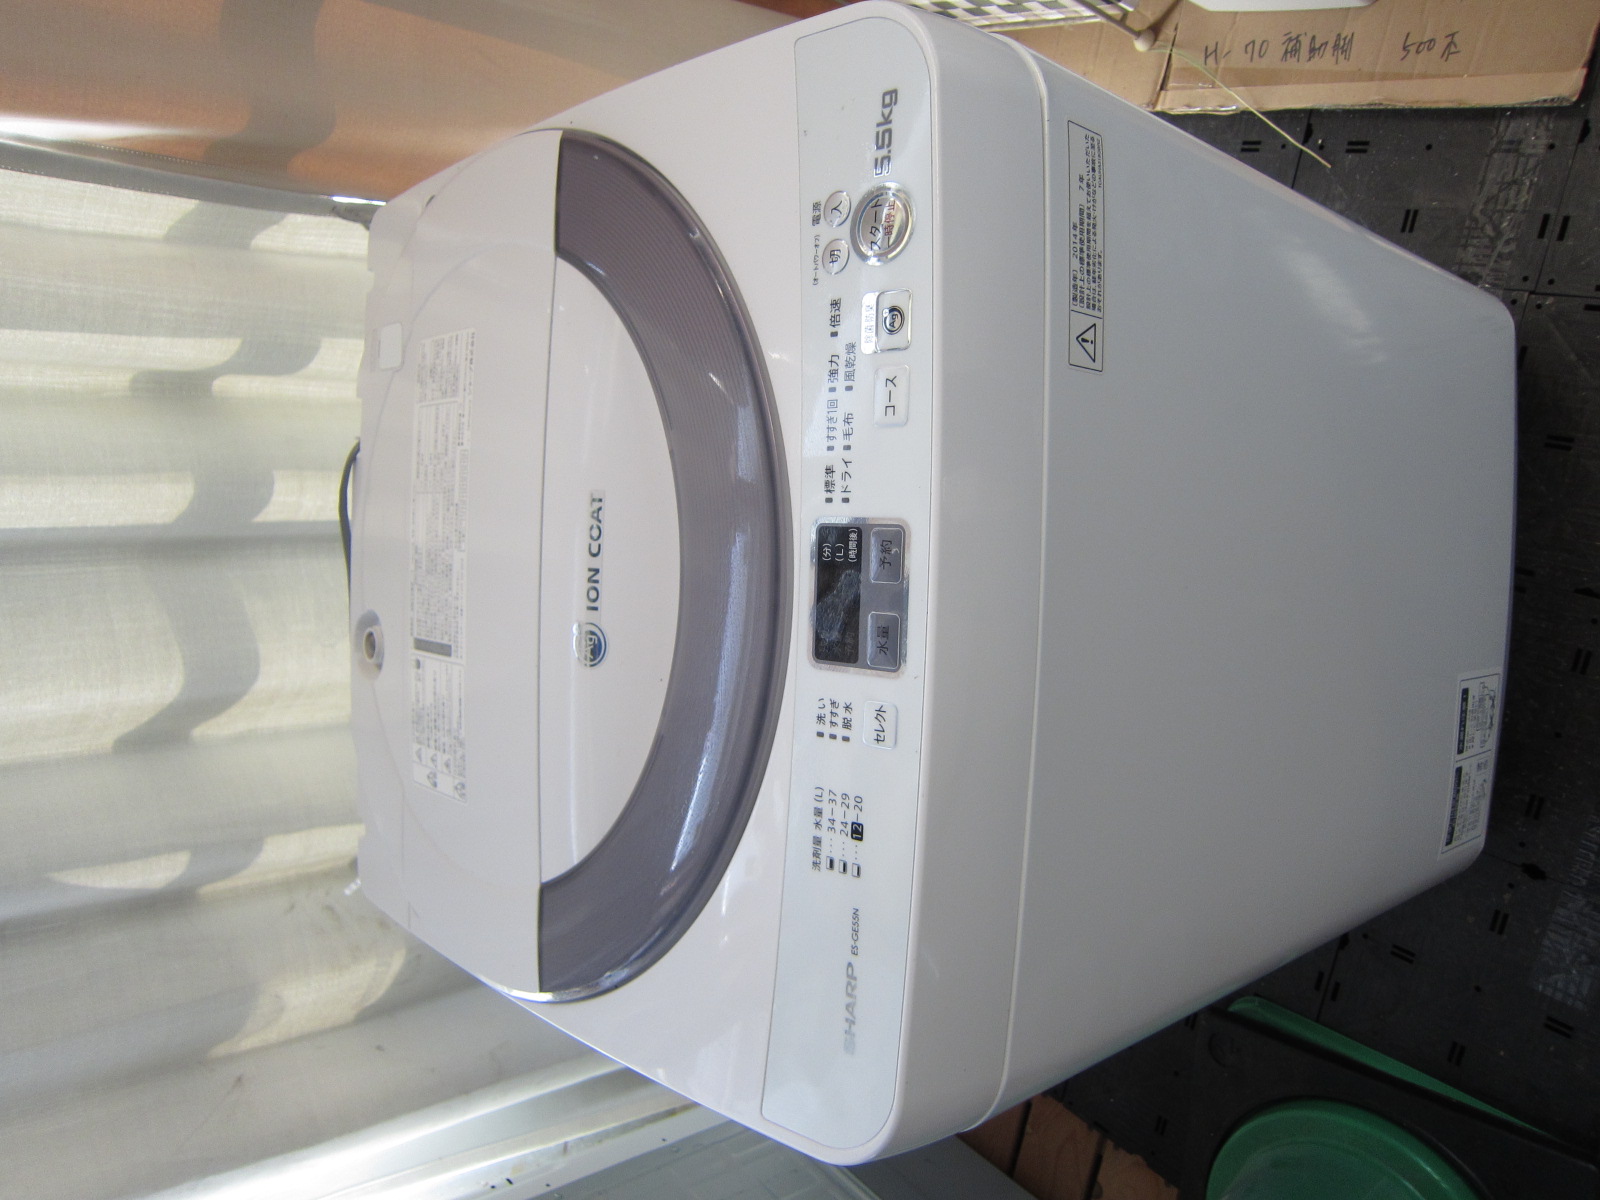 シャープ　中古全自動洗濯機　es-ge55n 2014年製